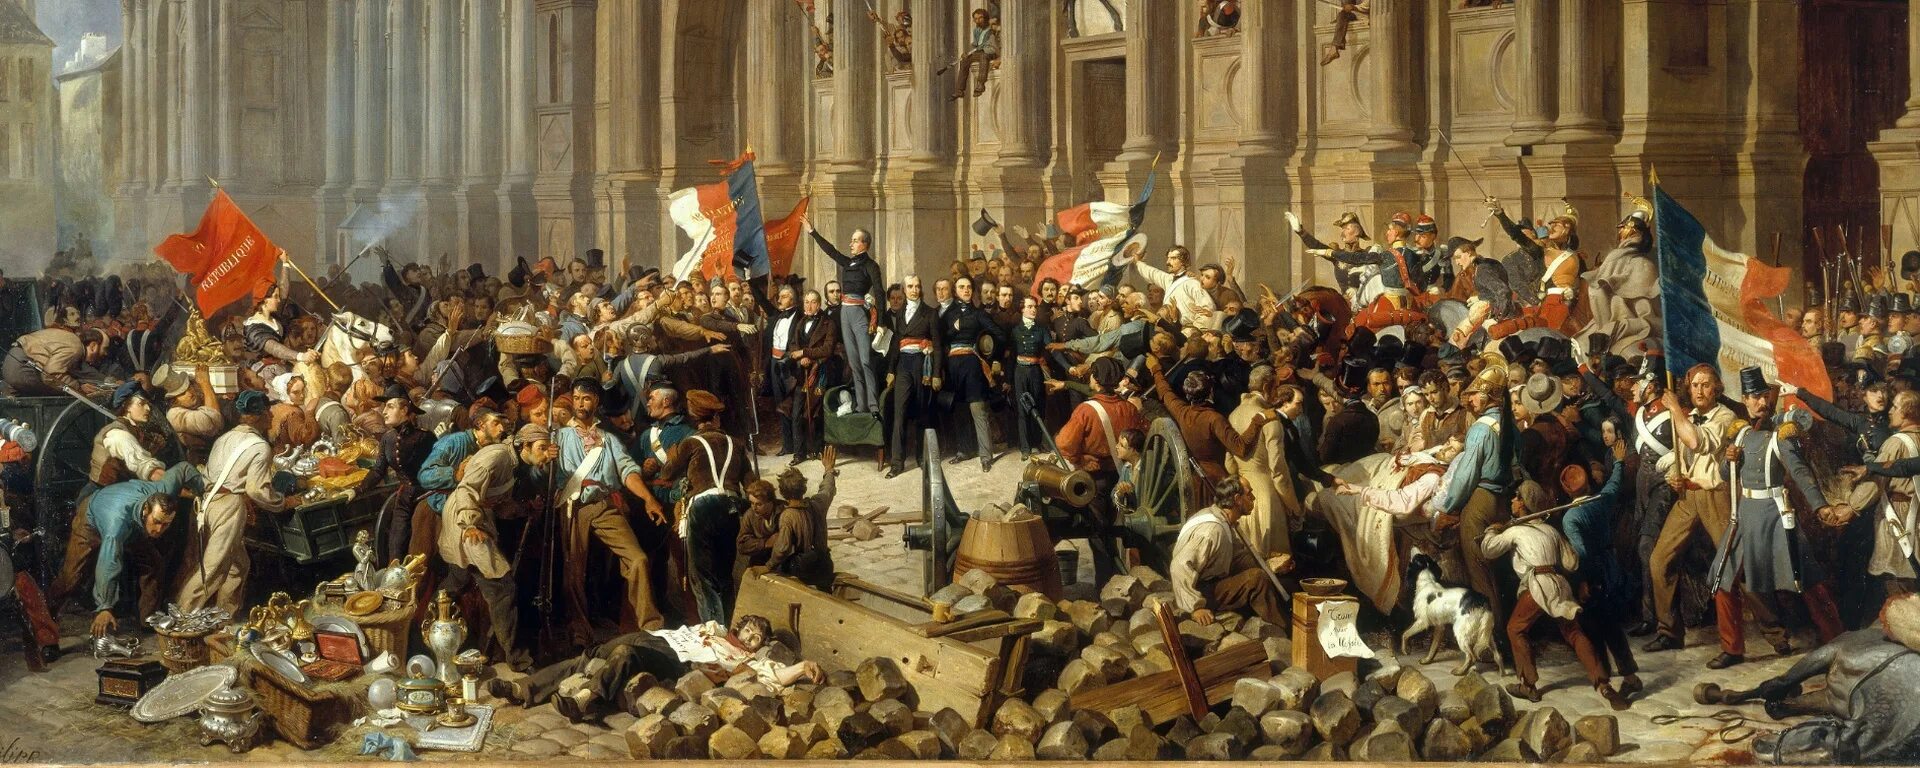 Страны революции 1848. Революция в Германии 1848. Германский национализм 19 век. Революция 1848 года во Франции. Буржуазная революция в Германии.